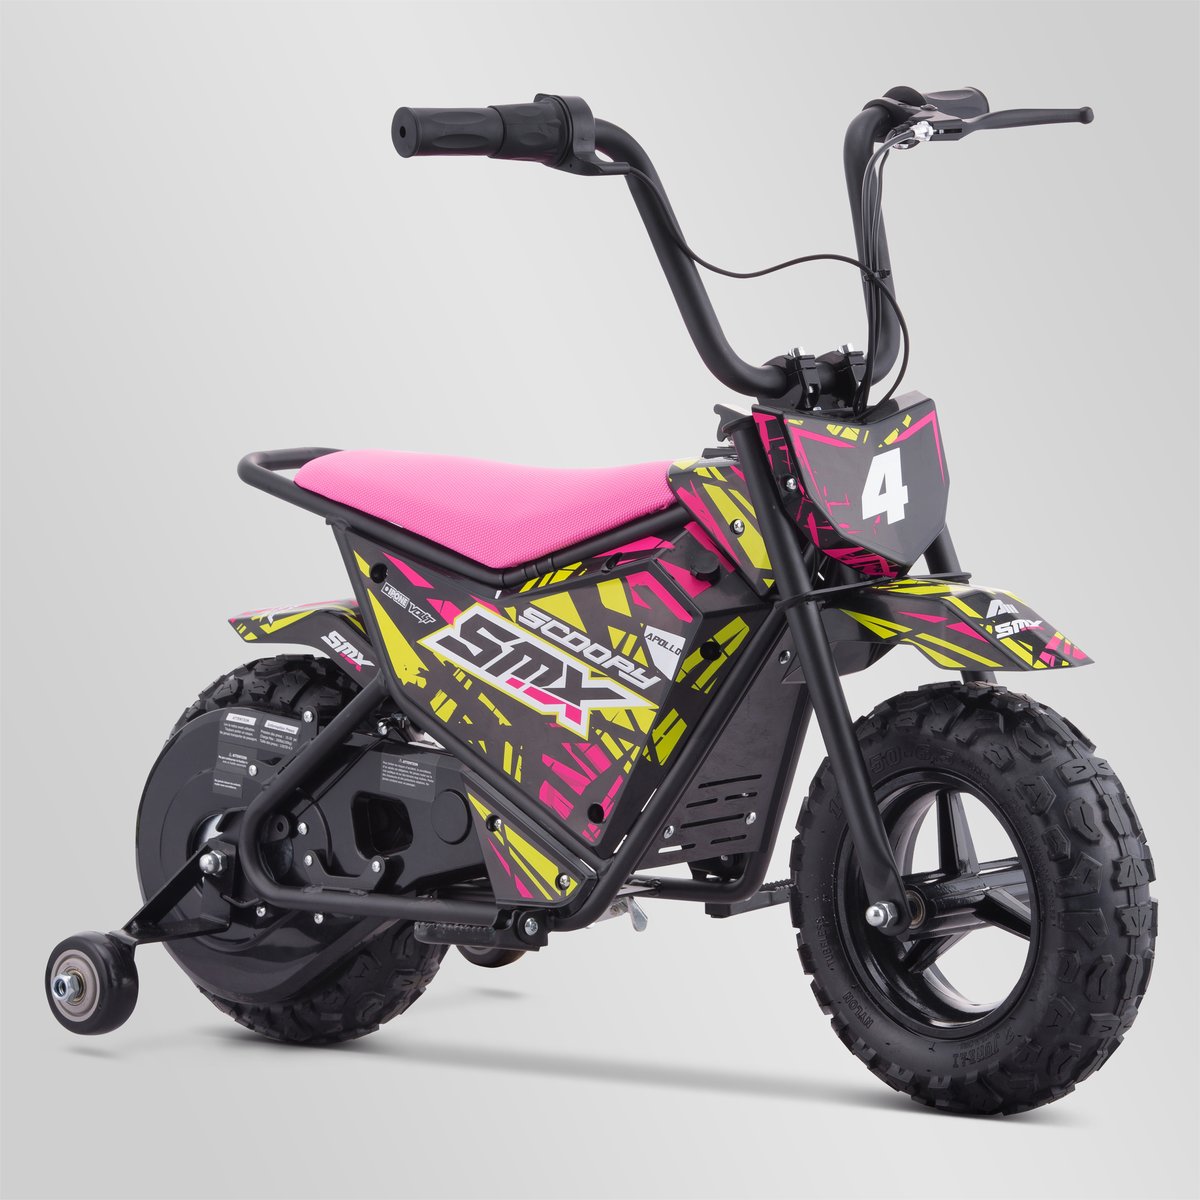 COUDIERES KID - pièces détachées moto cross Mud Riders